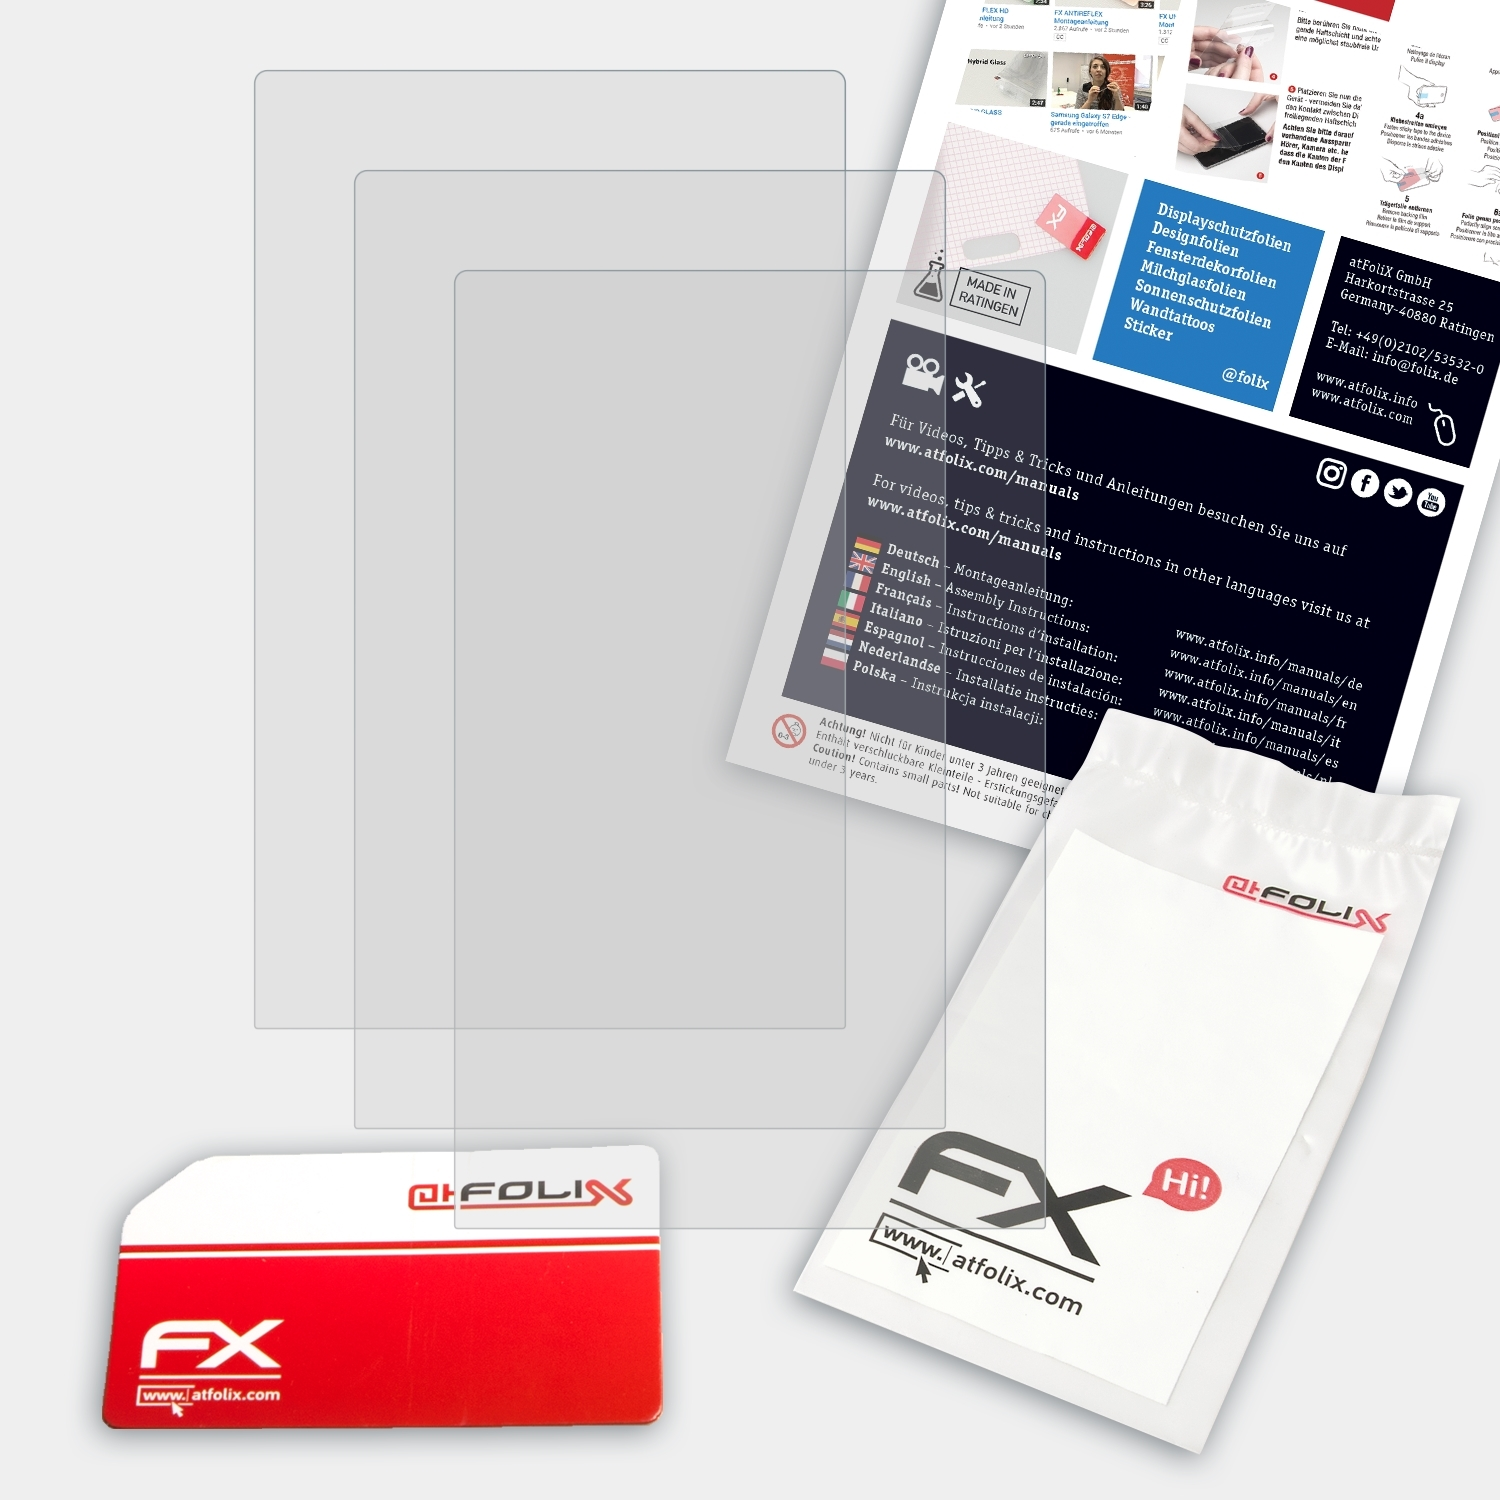 FX-Antireflex NWZ-A15) Displayschutz(für Walkman Sony 3x ATFOLIX